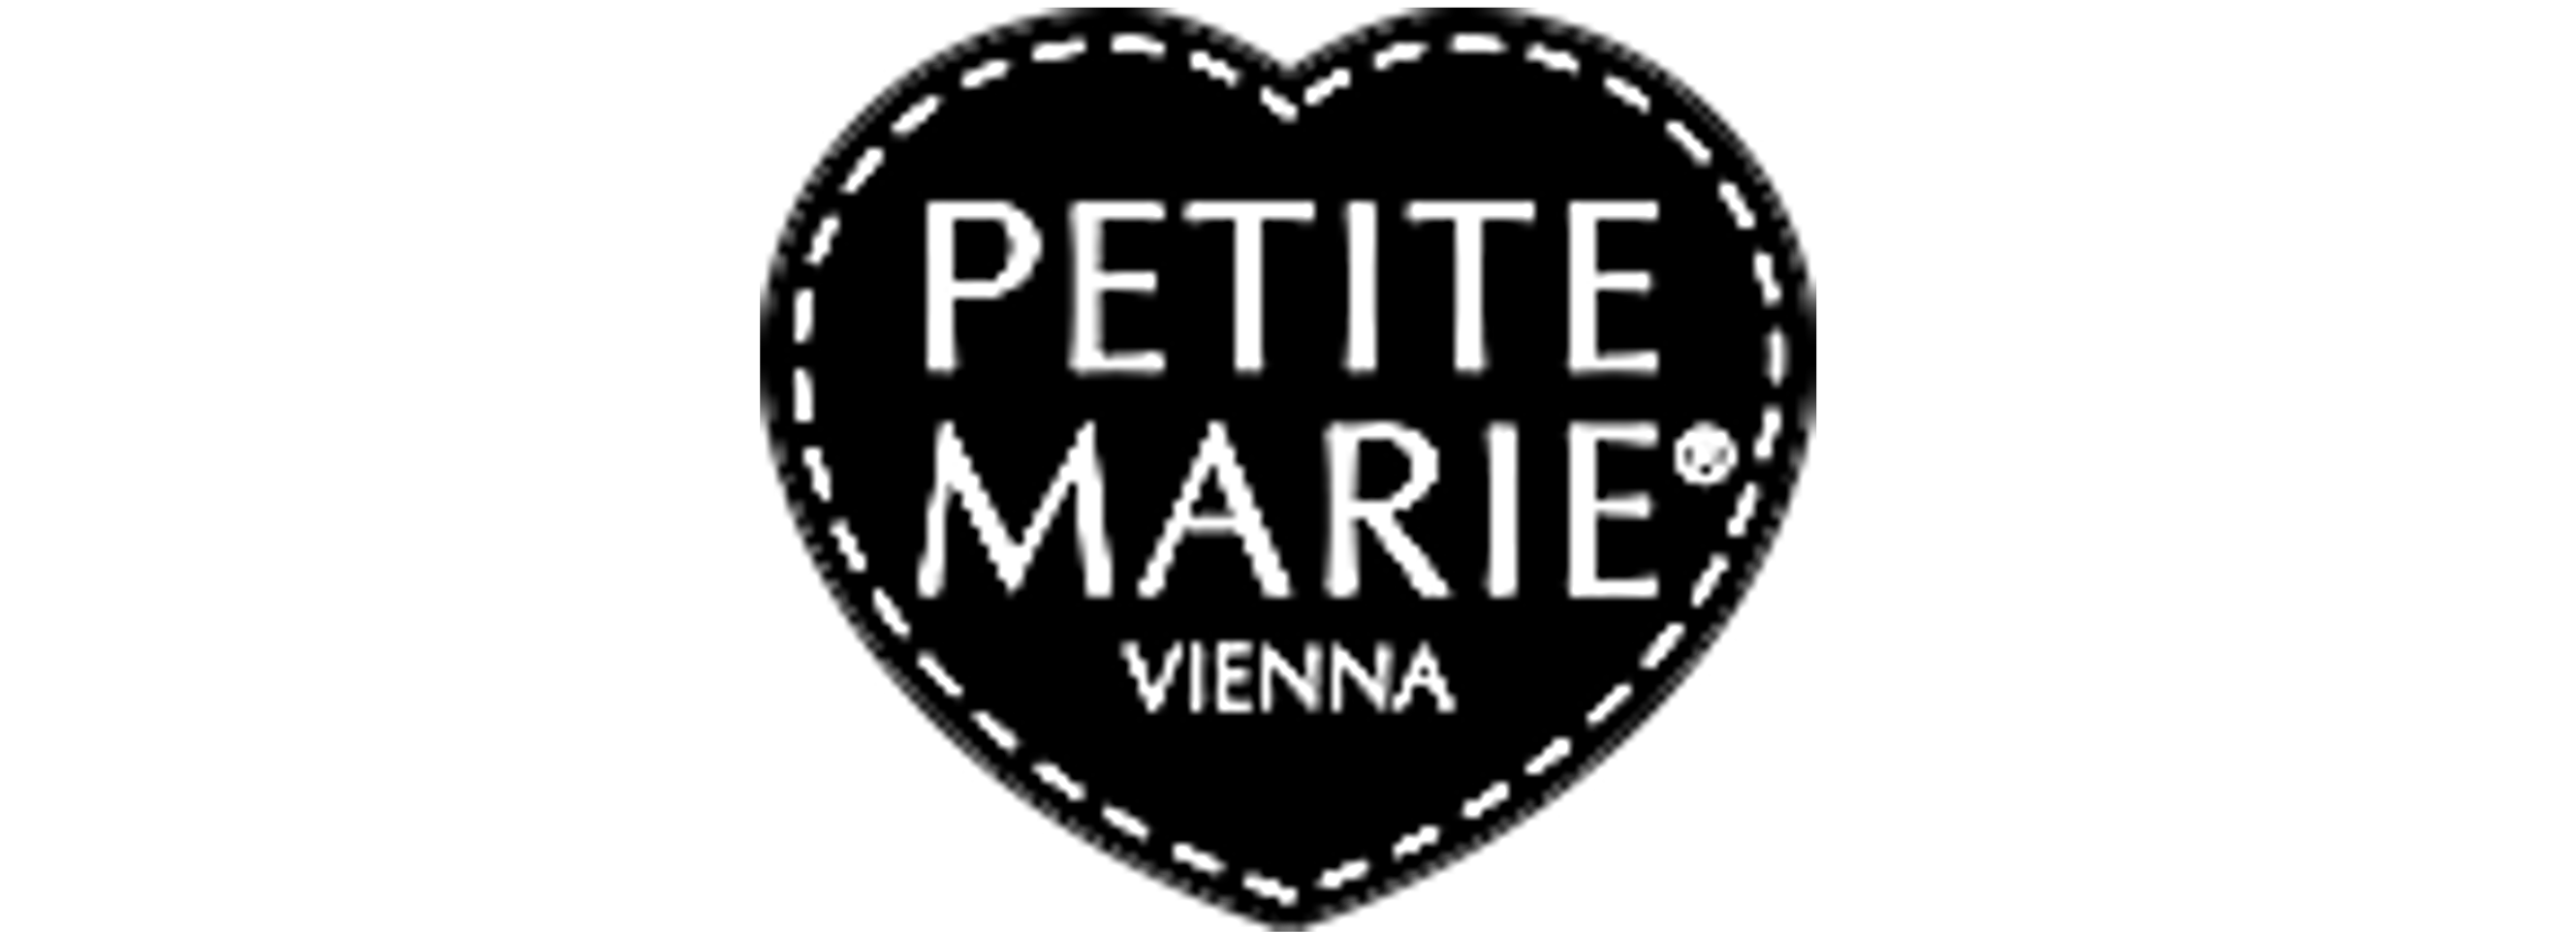 Petite Marie Vienna